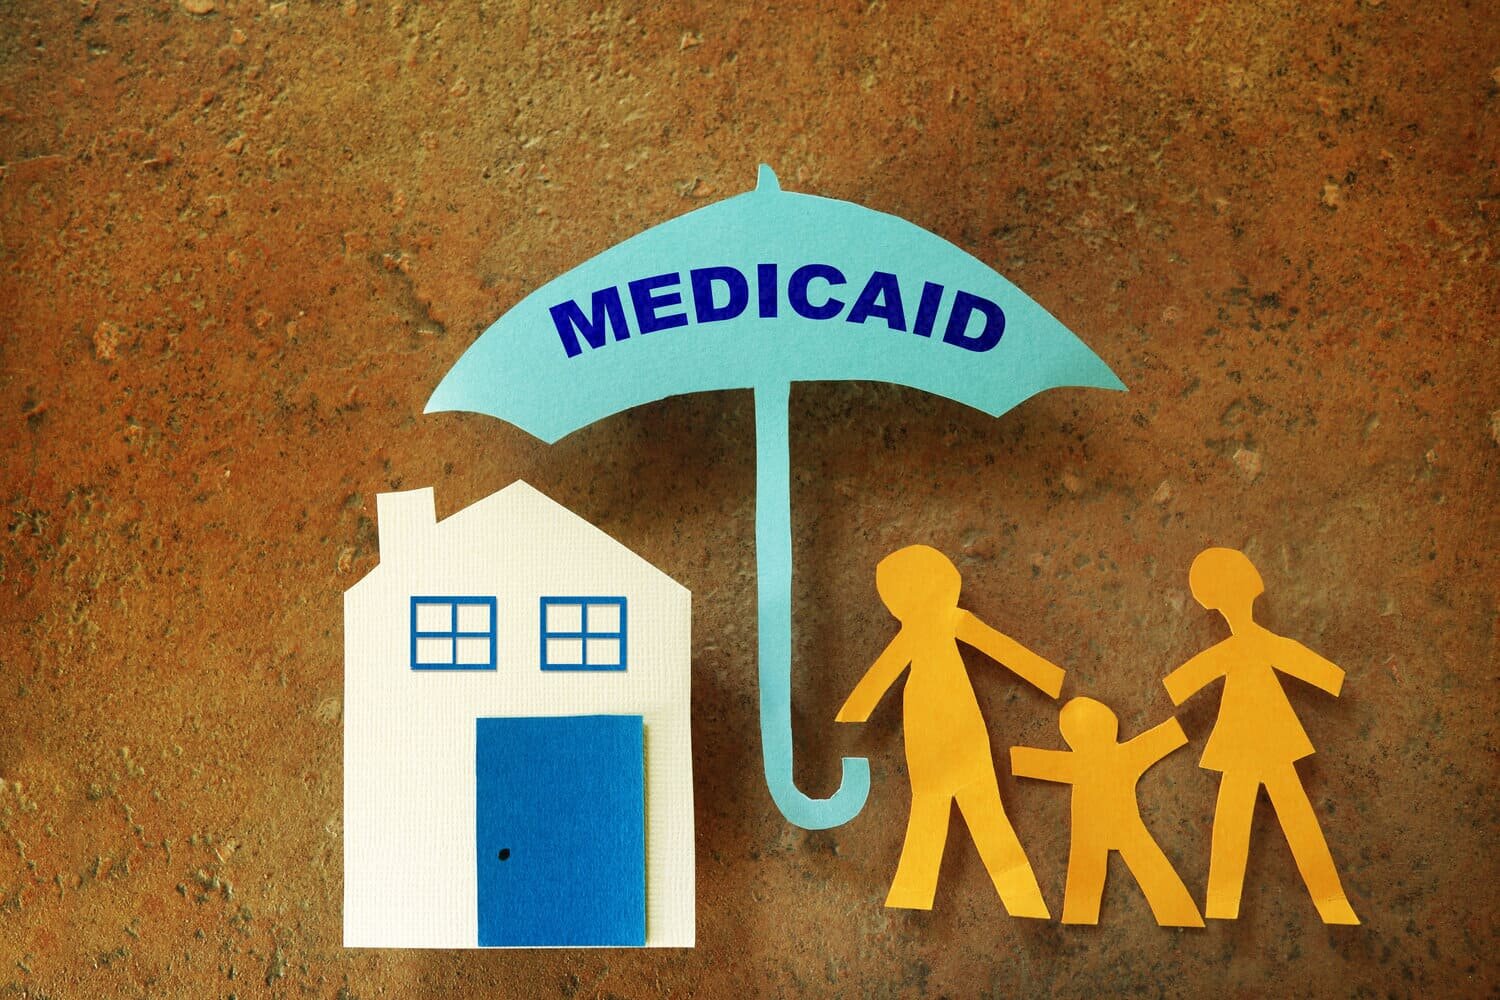 Obra de arte infantil de una casa de papel recortada junto a personas de pie bajo un paraguas que decía "Medicaid" en representación de Kansas Medicaid.